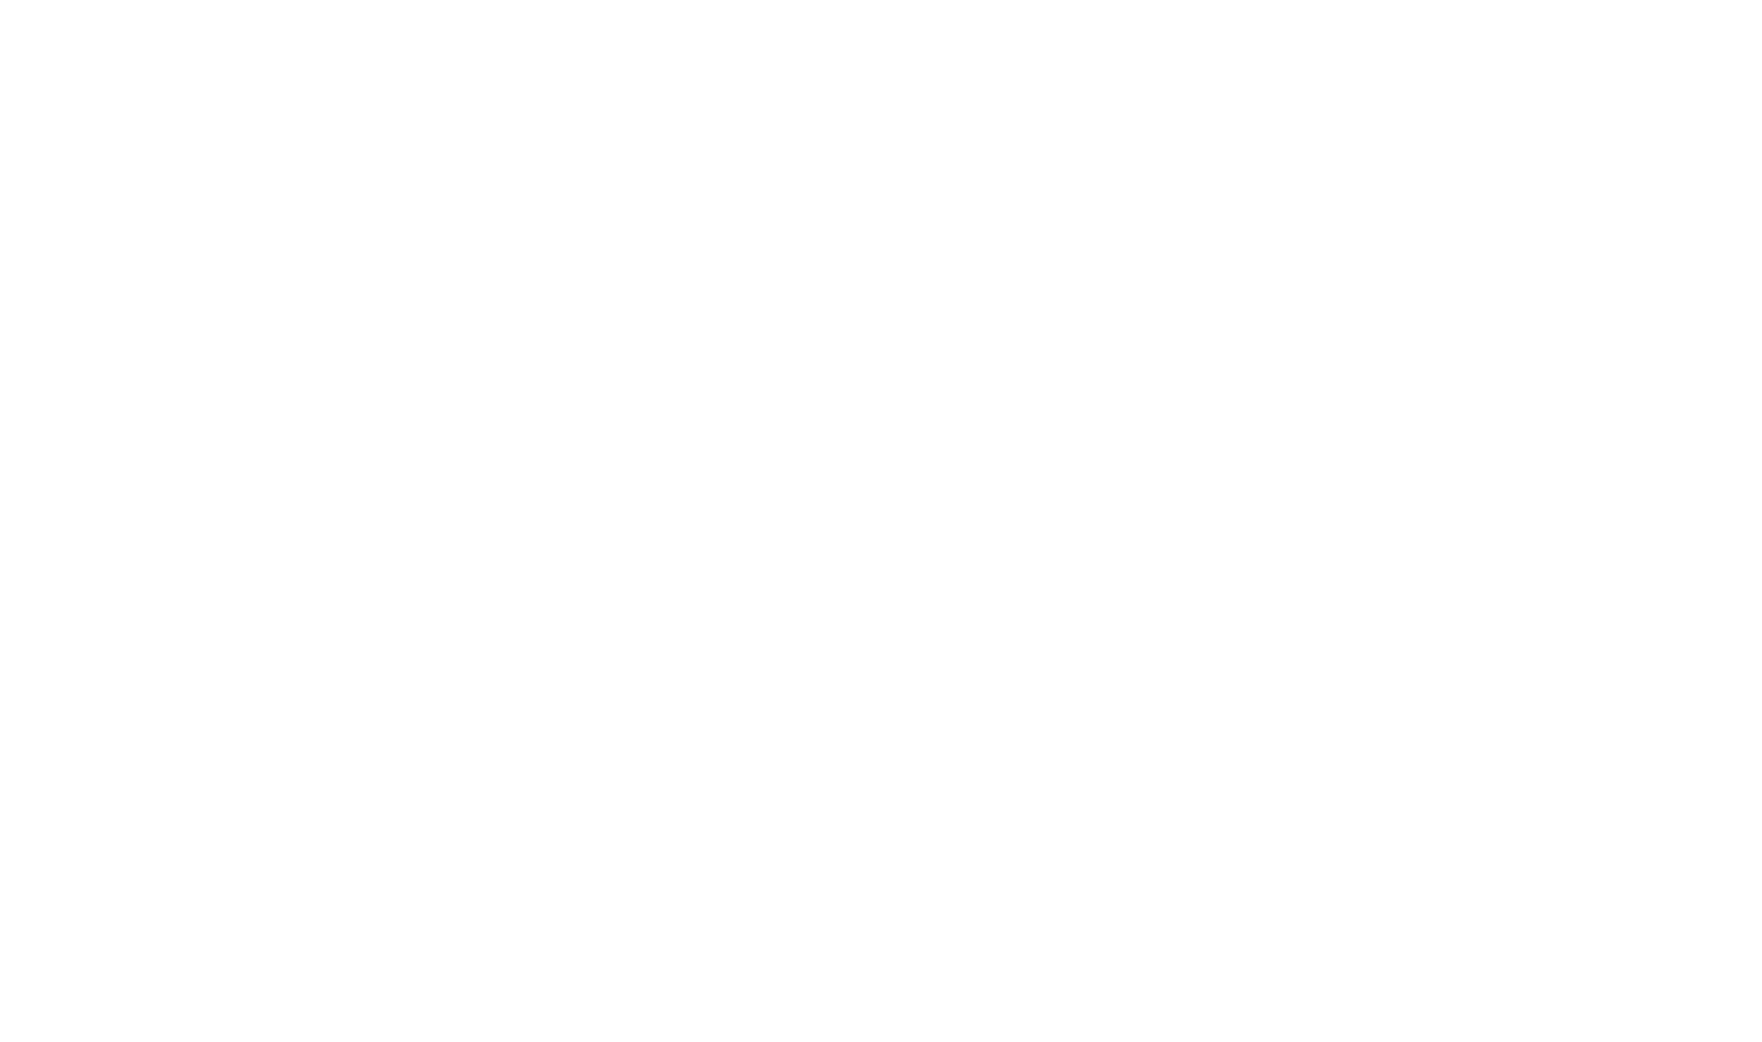 About Lincoln Lincoln ta e marca di automobil di luho di Ford Motor Company, comprometi pa crea e vehiculonan extrema   